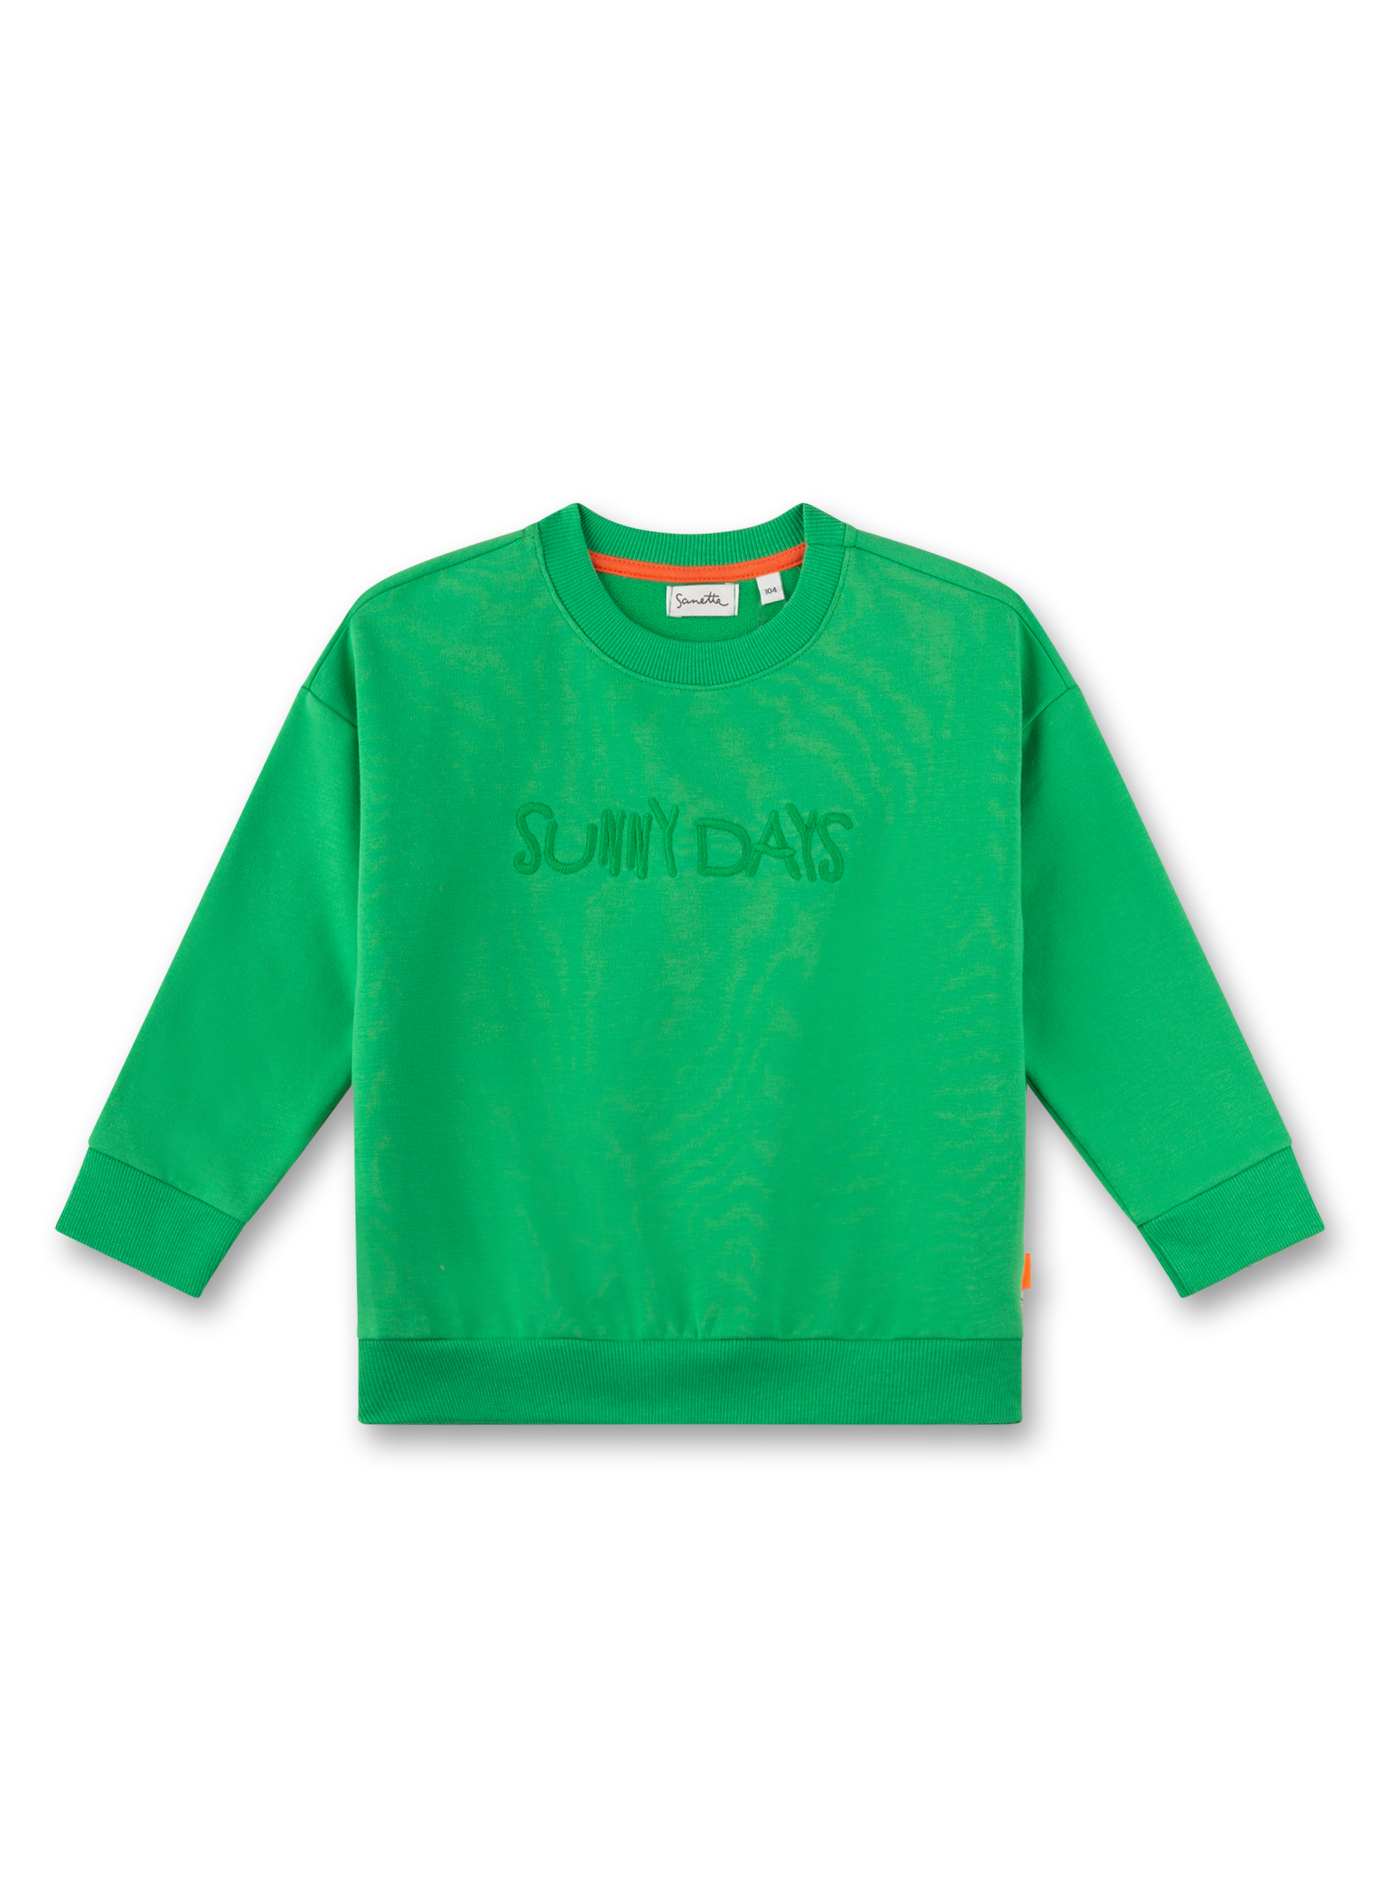 Mädchen-Sweatshirt Grün